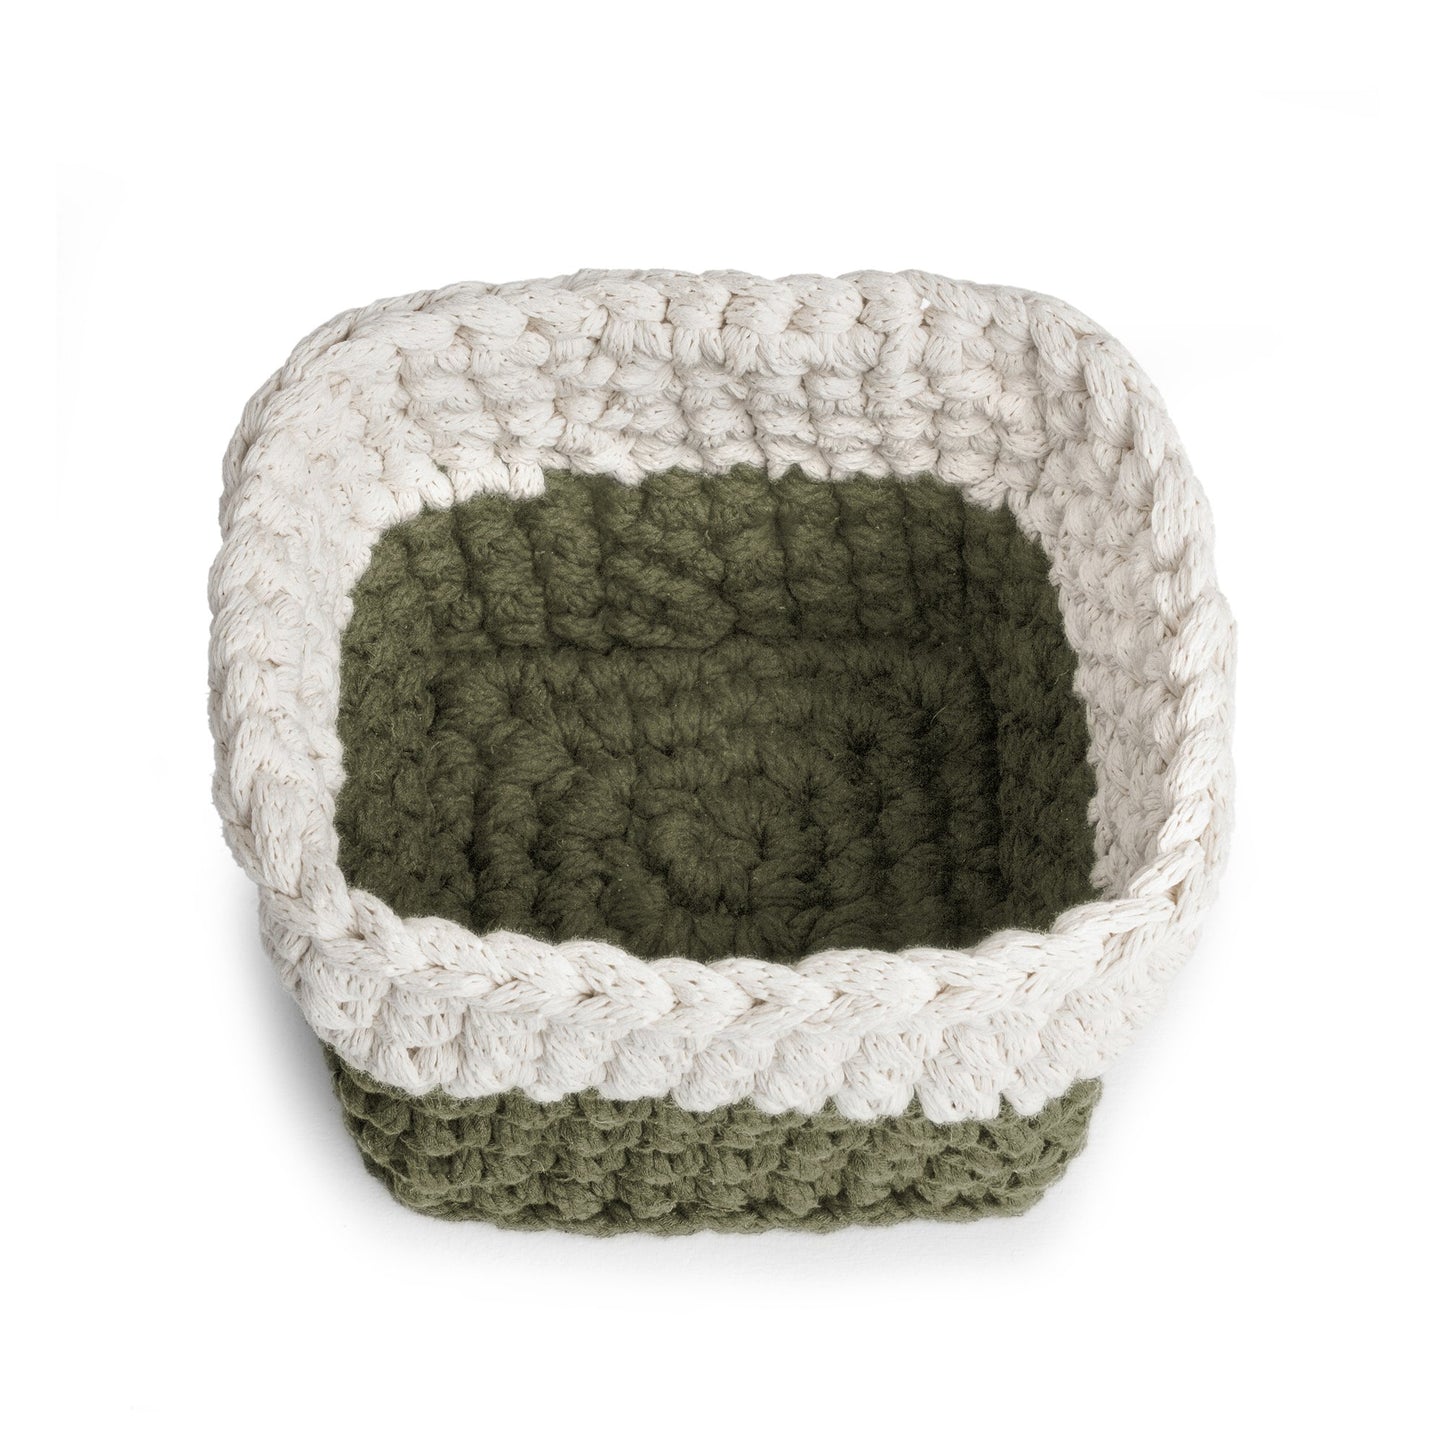 Vaso de crochê Bicolor, Verde/Cru, com fio 100% algodão. 